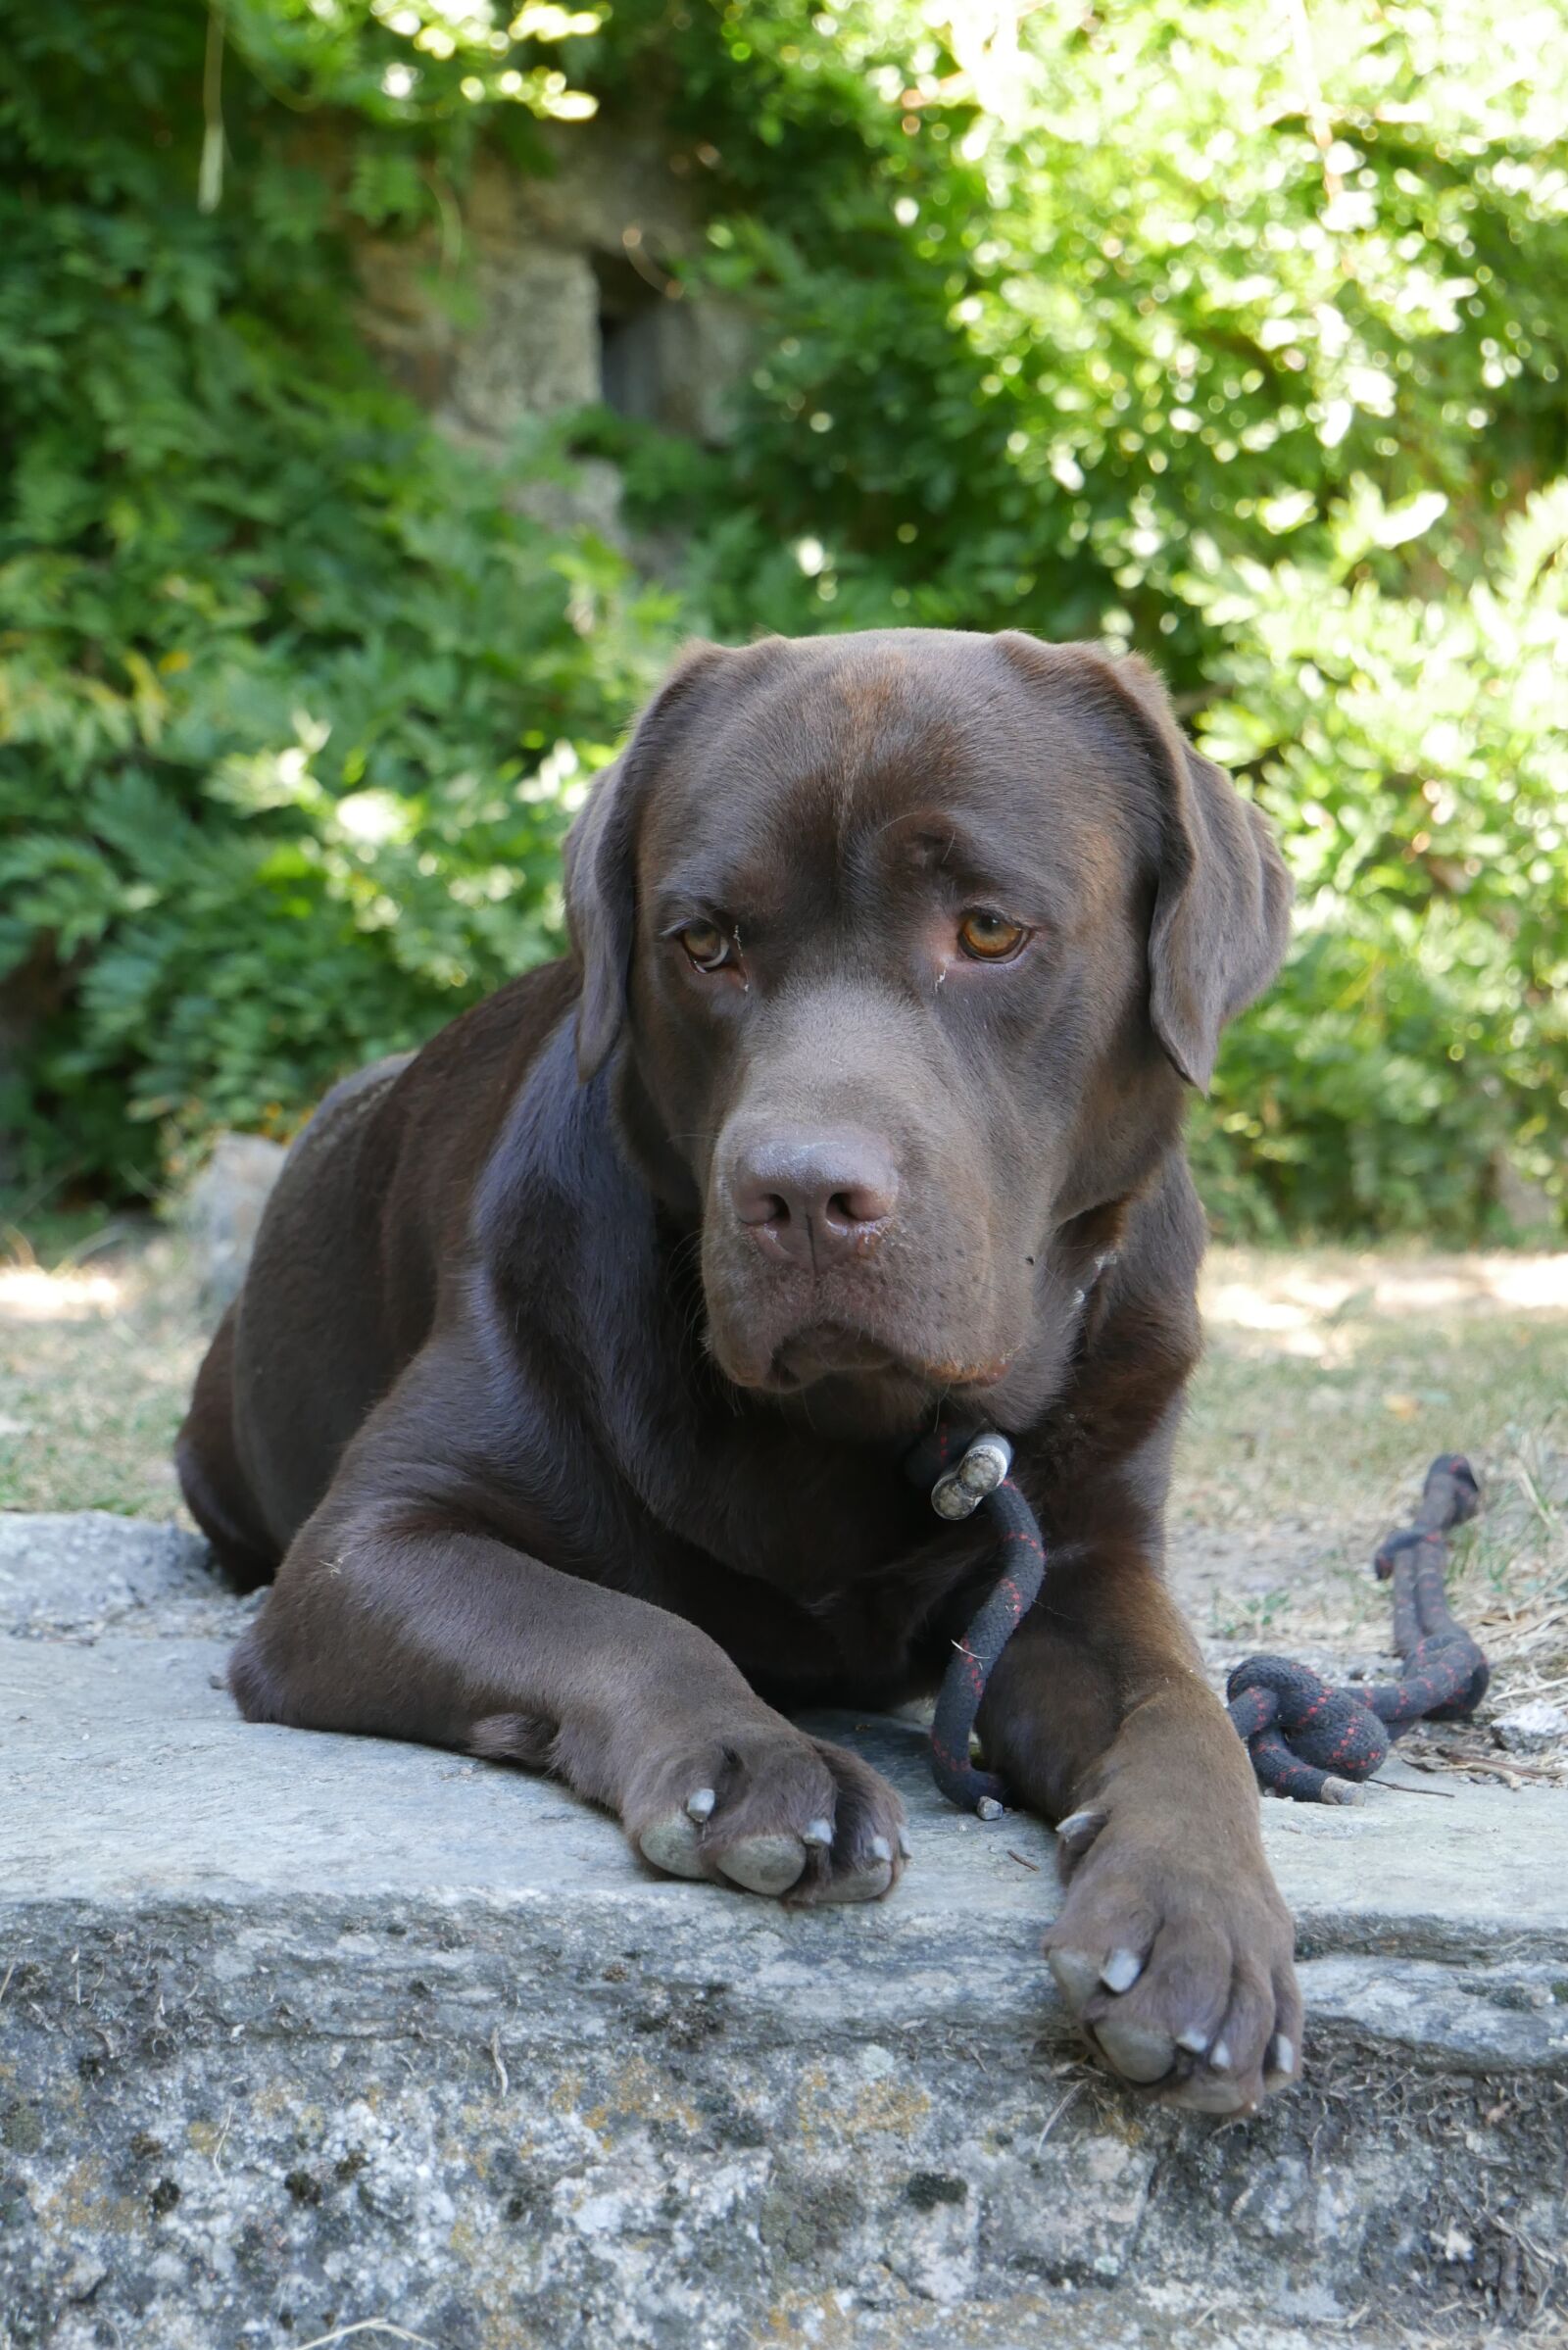 Panasonic DMC-G70 sample photo. Labrador, brown, dog photography